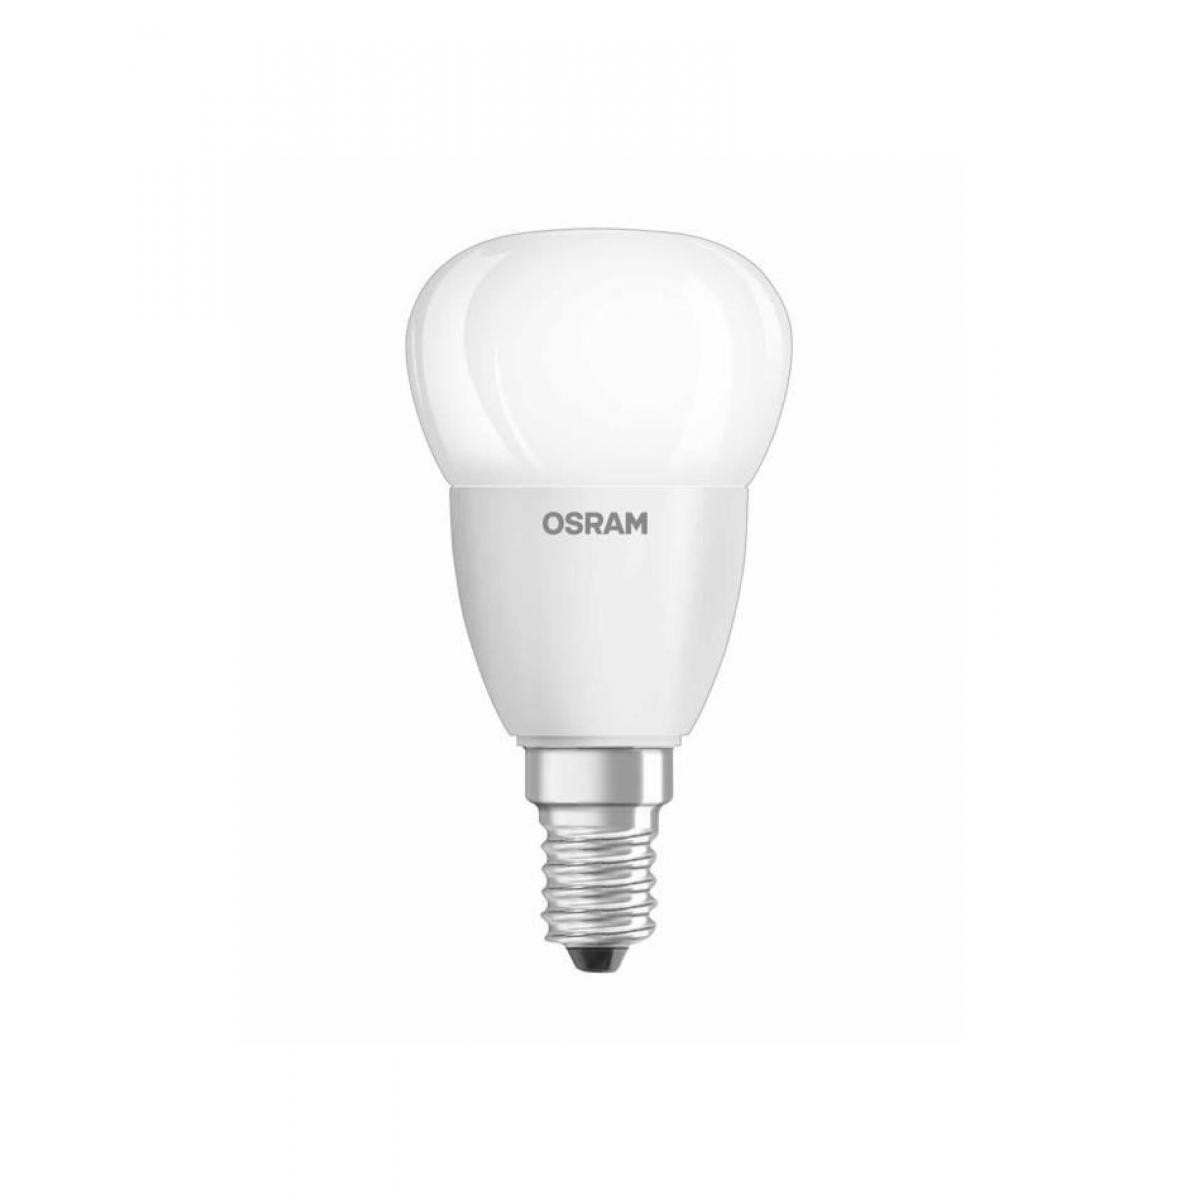 Osram - OSRAM Ampoule LED E14 5 W équivalent a 40 W blanc froid - Ampoules LED